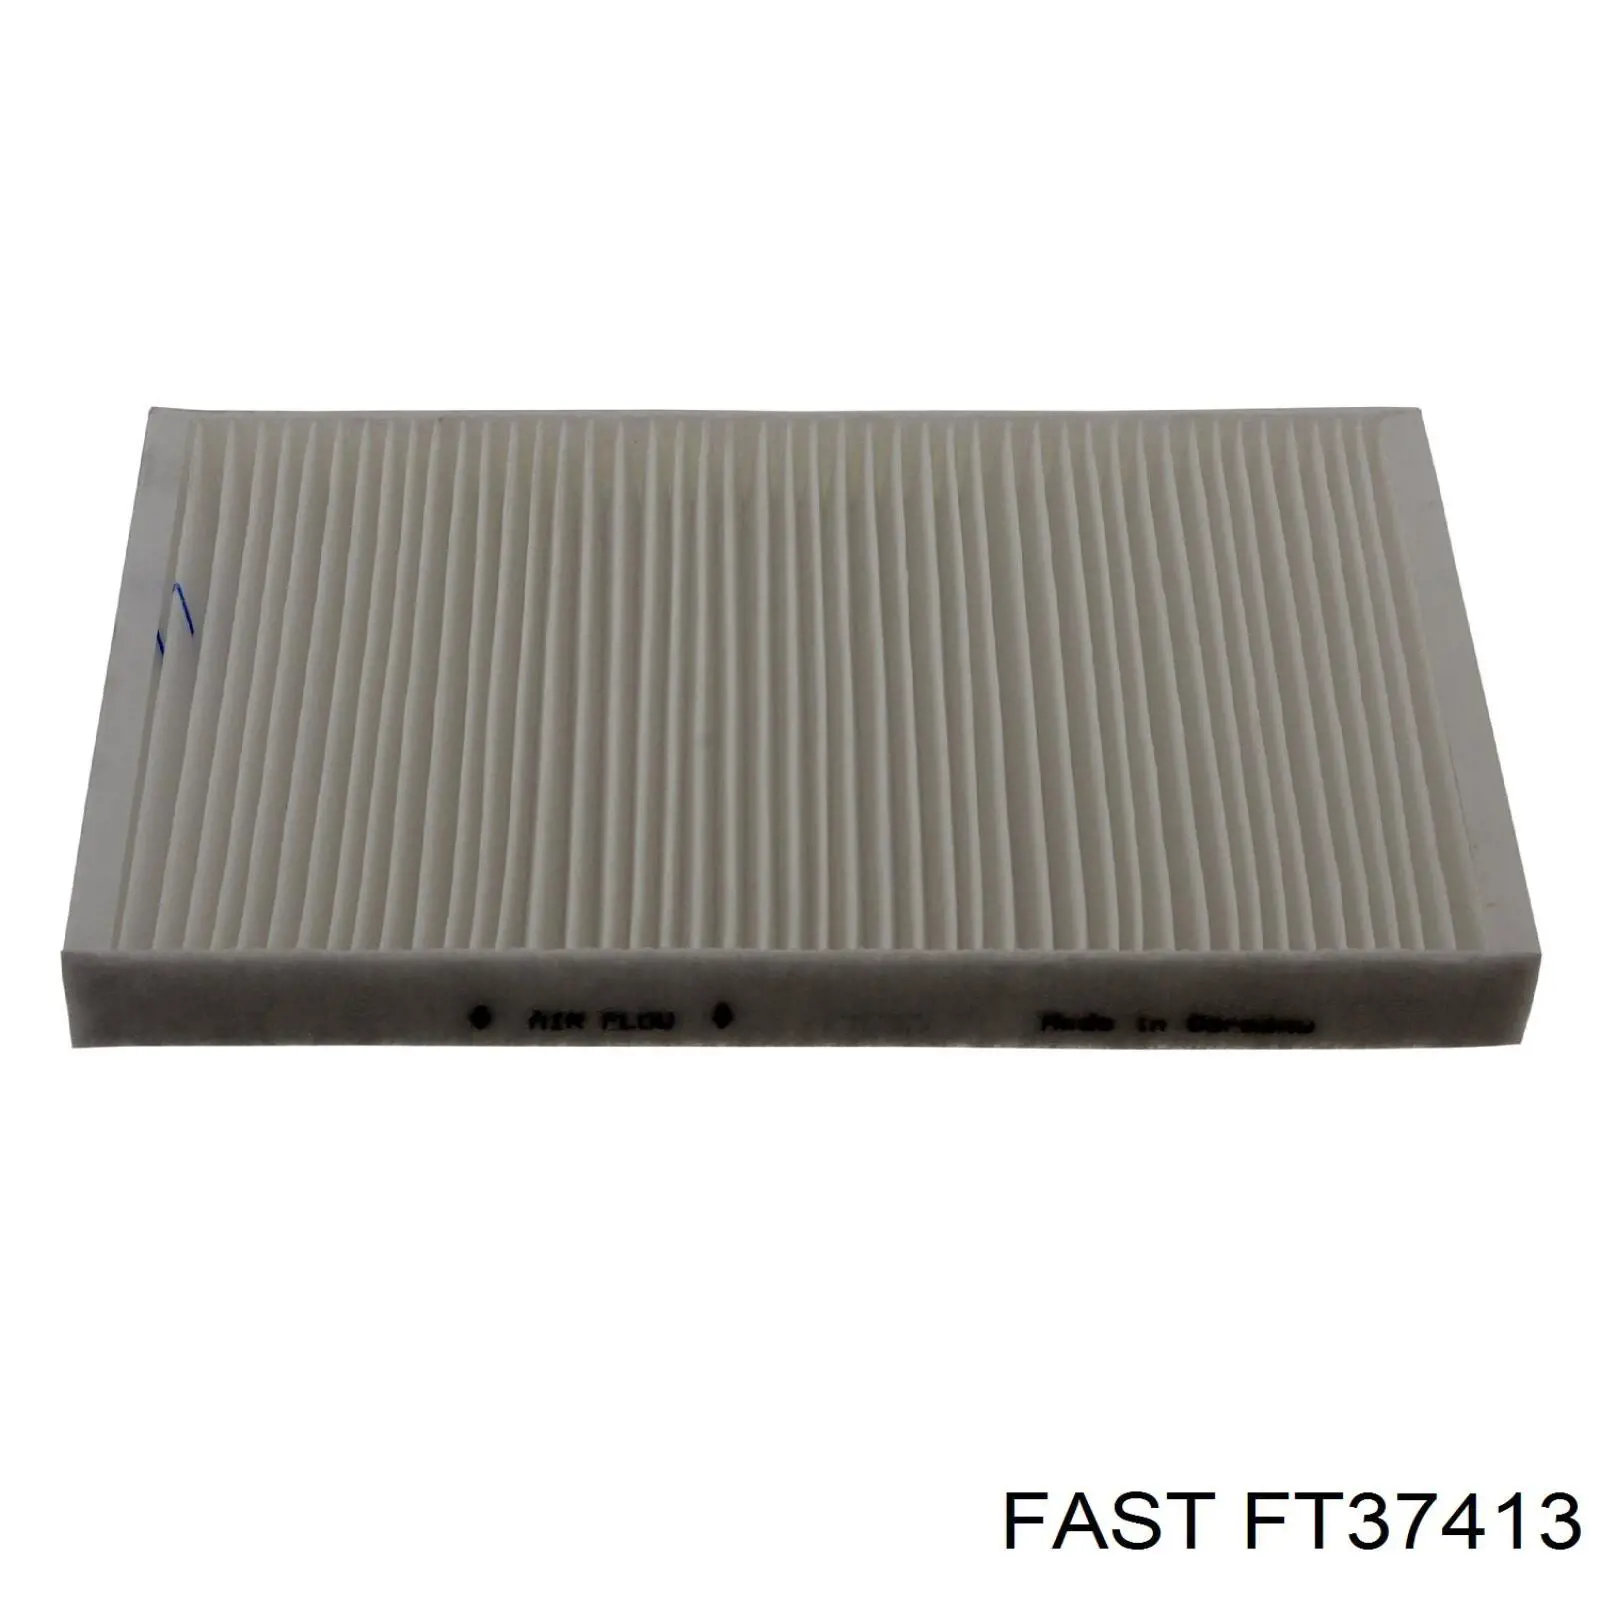 FT37413 Fast filtro habitáculo